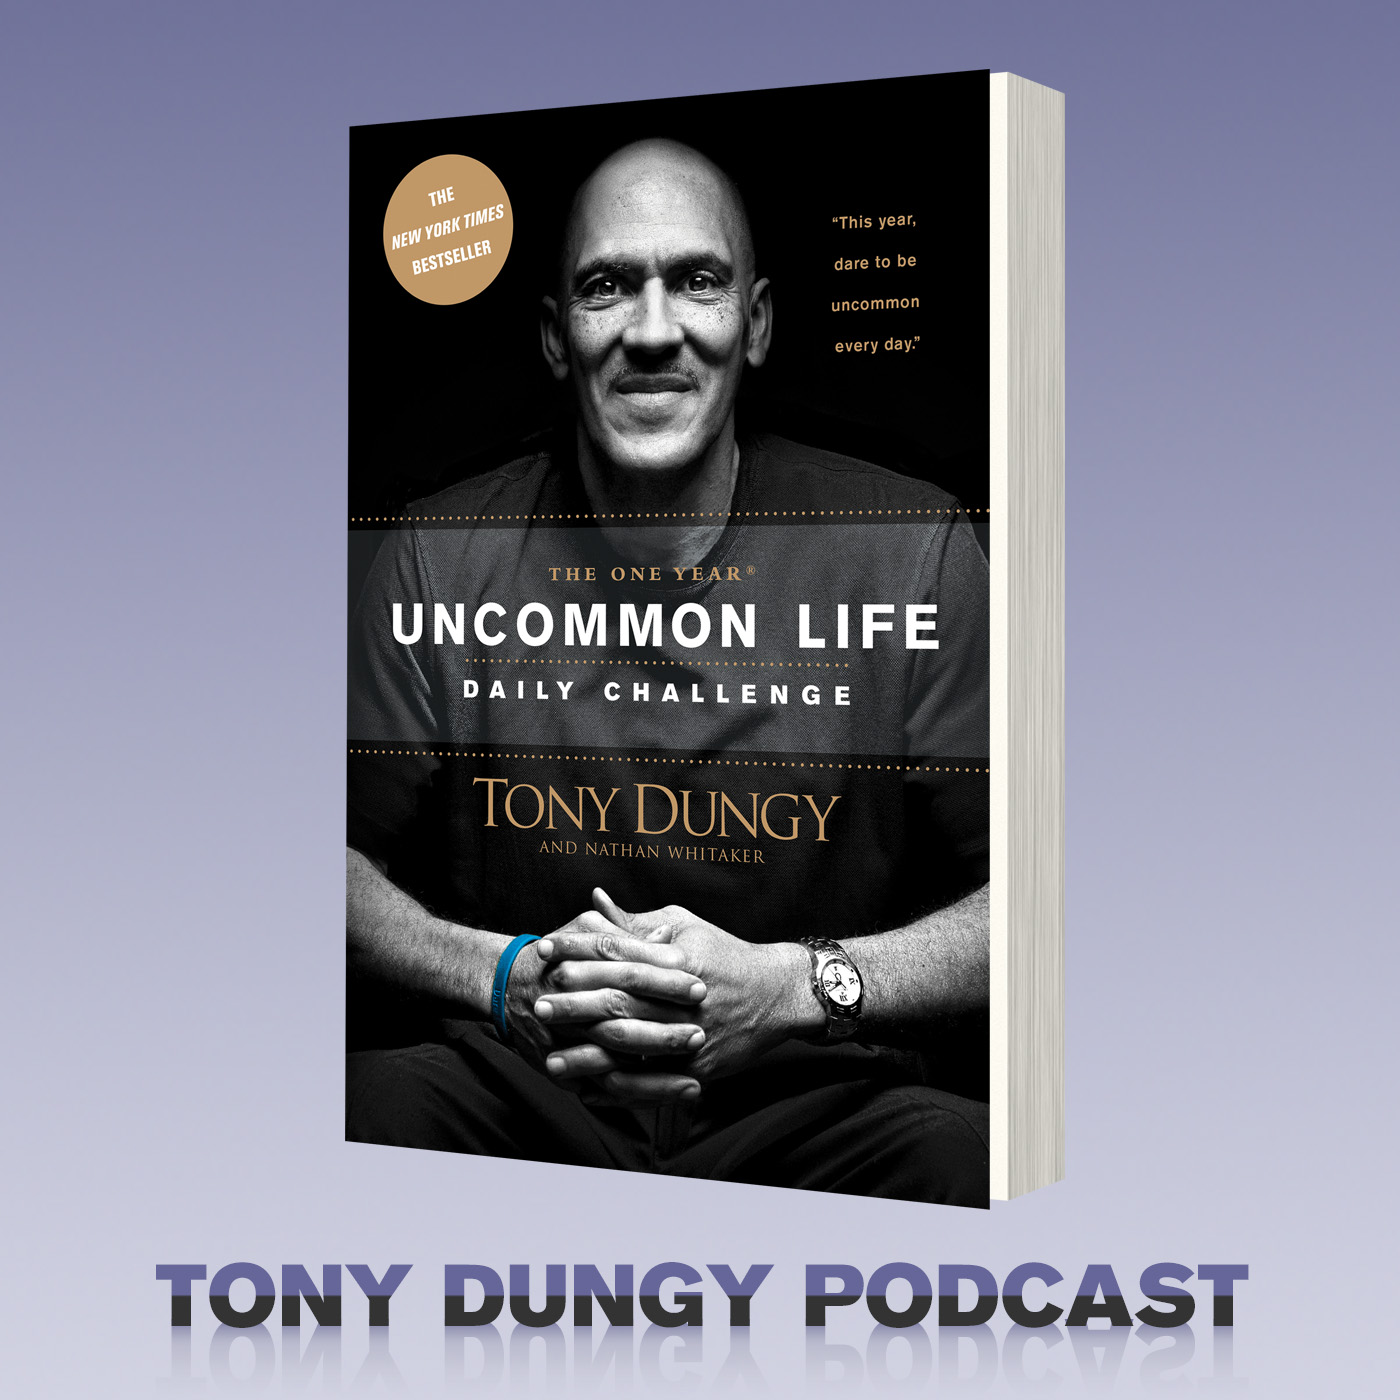 The Tony Dungy Podcast